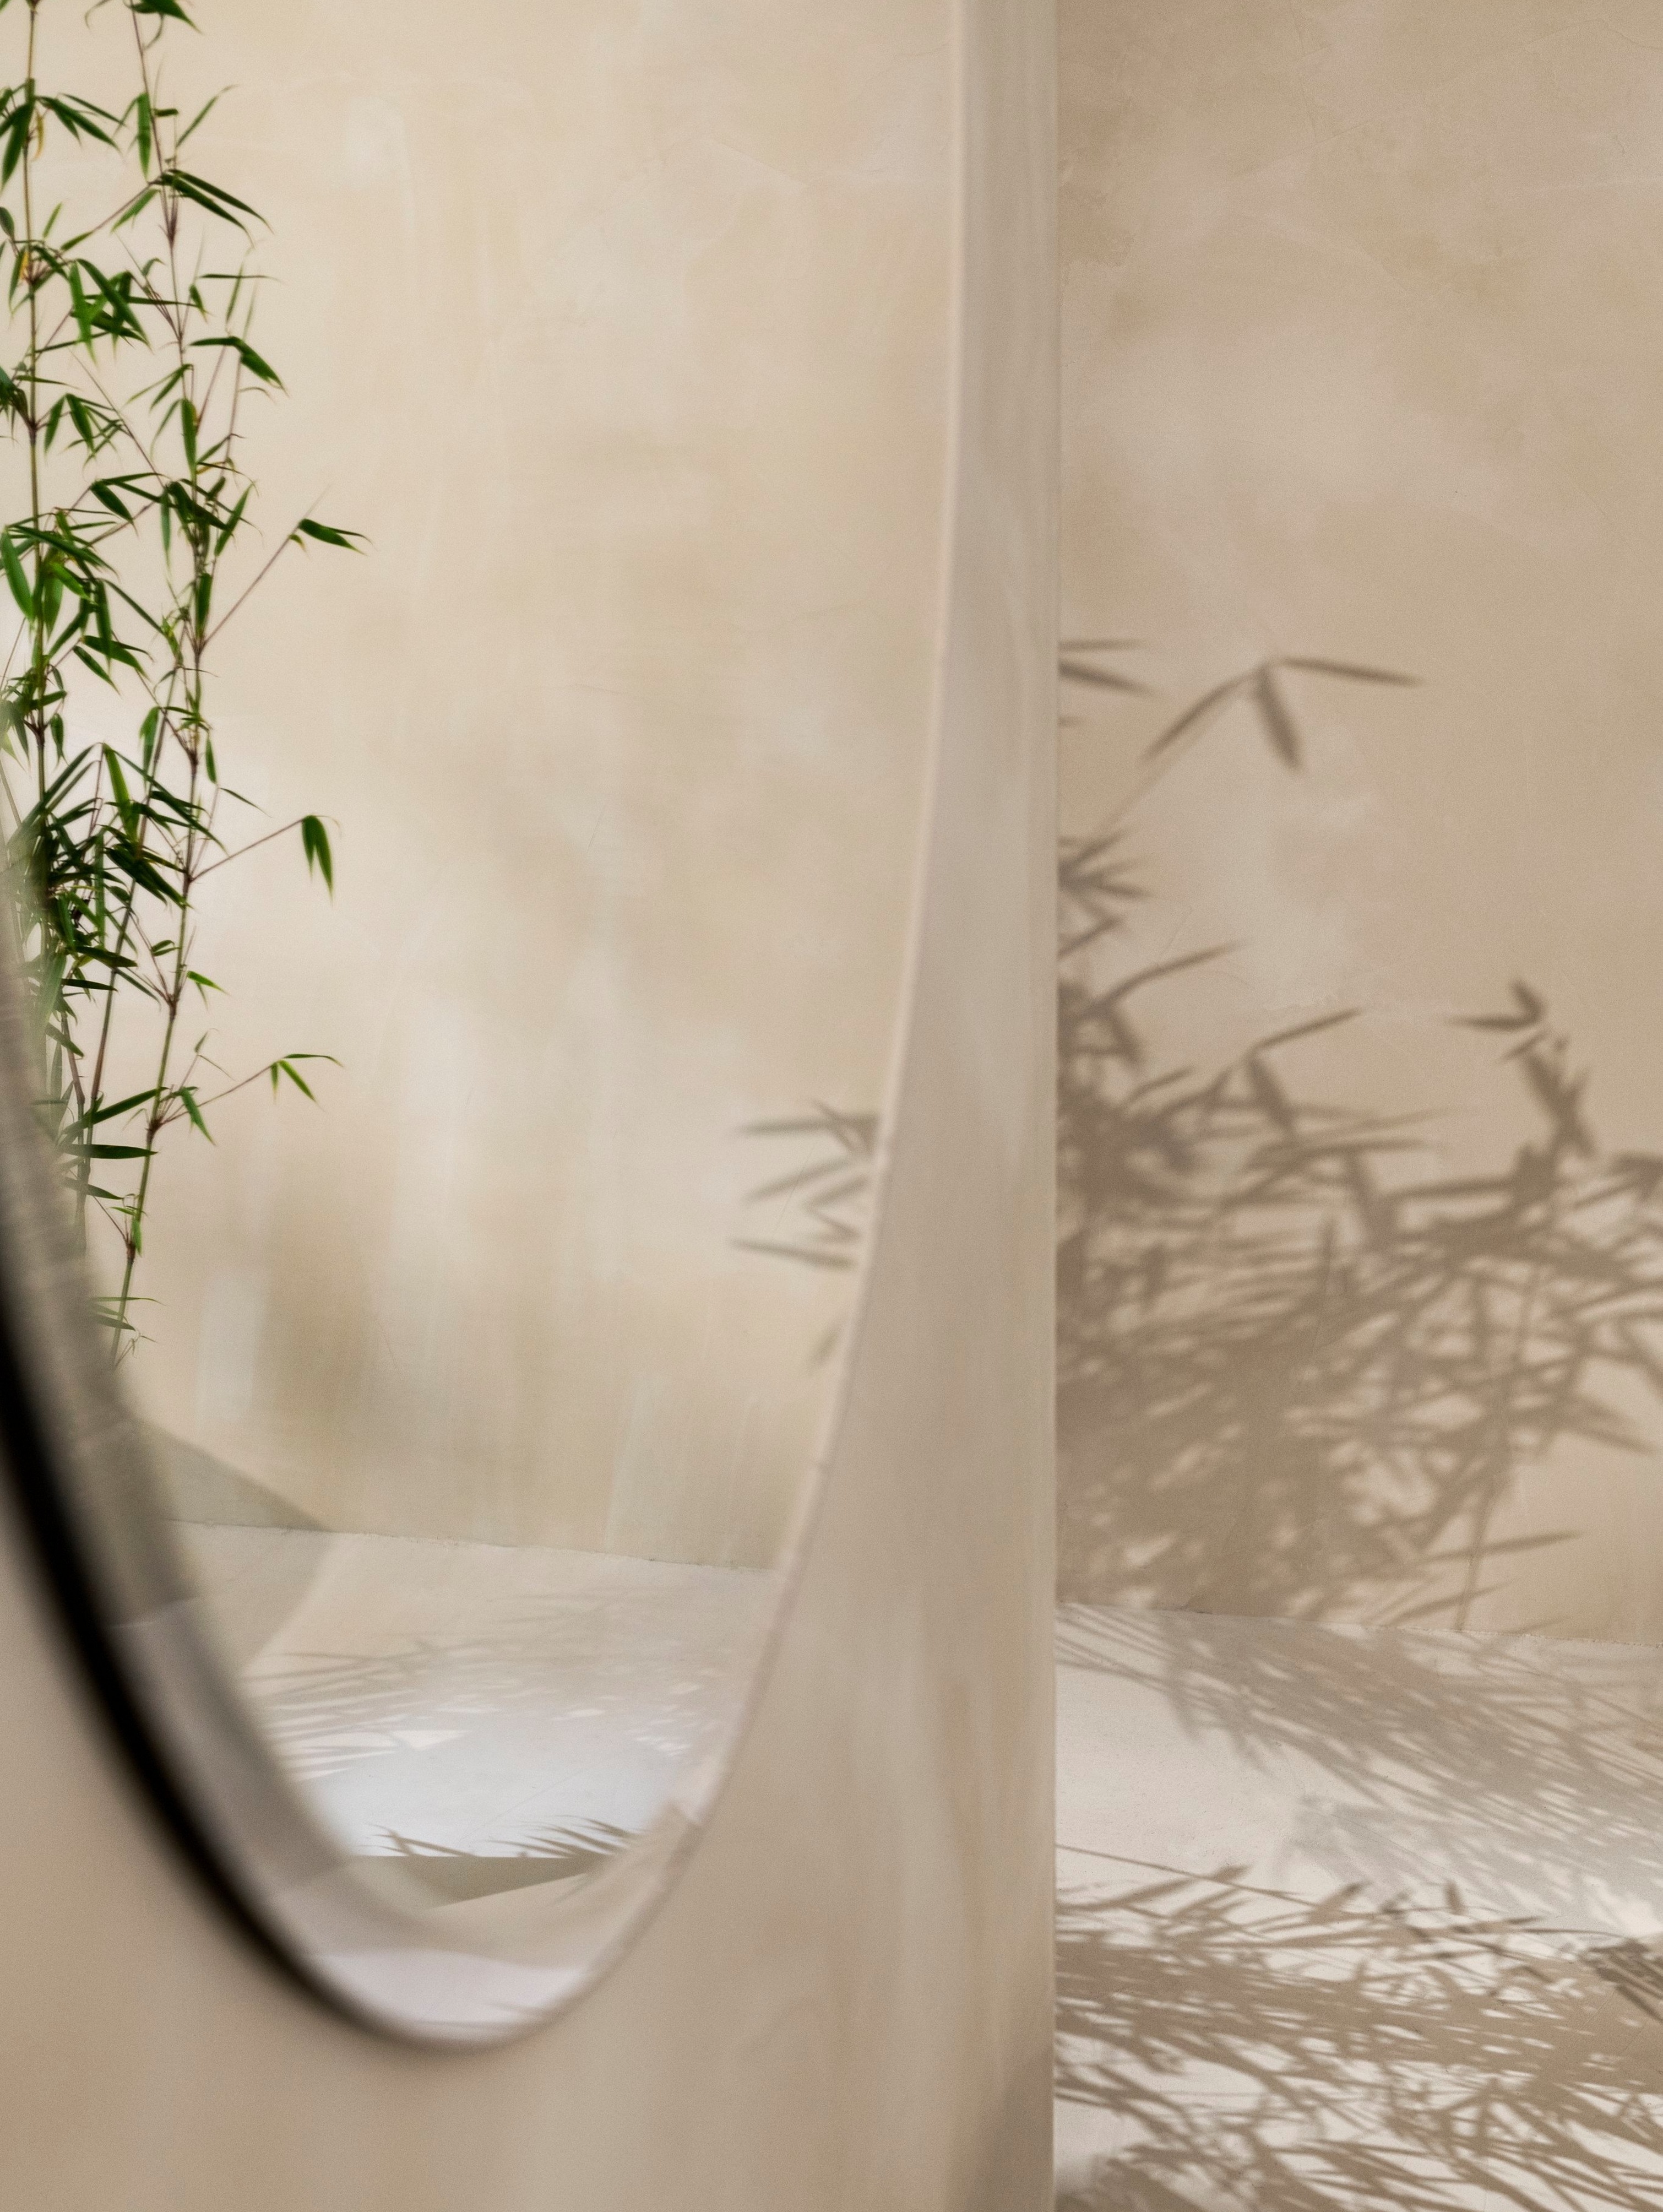 Le miroir rond Tone suspendu au mur reflétant une plante.